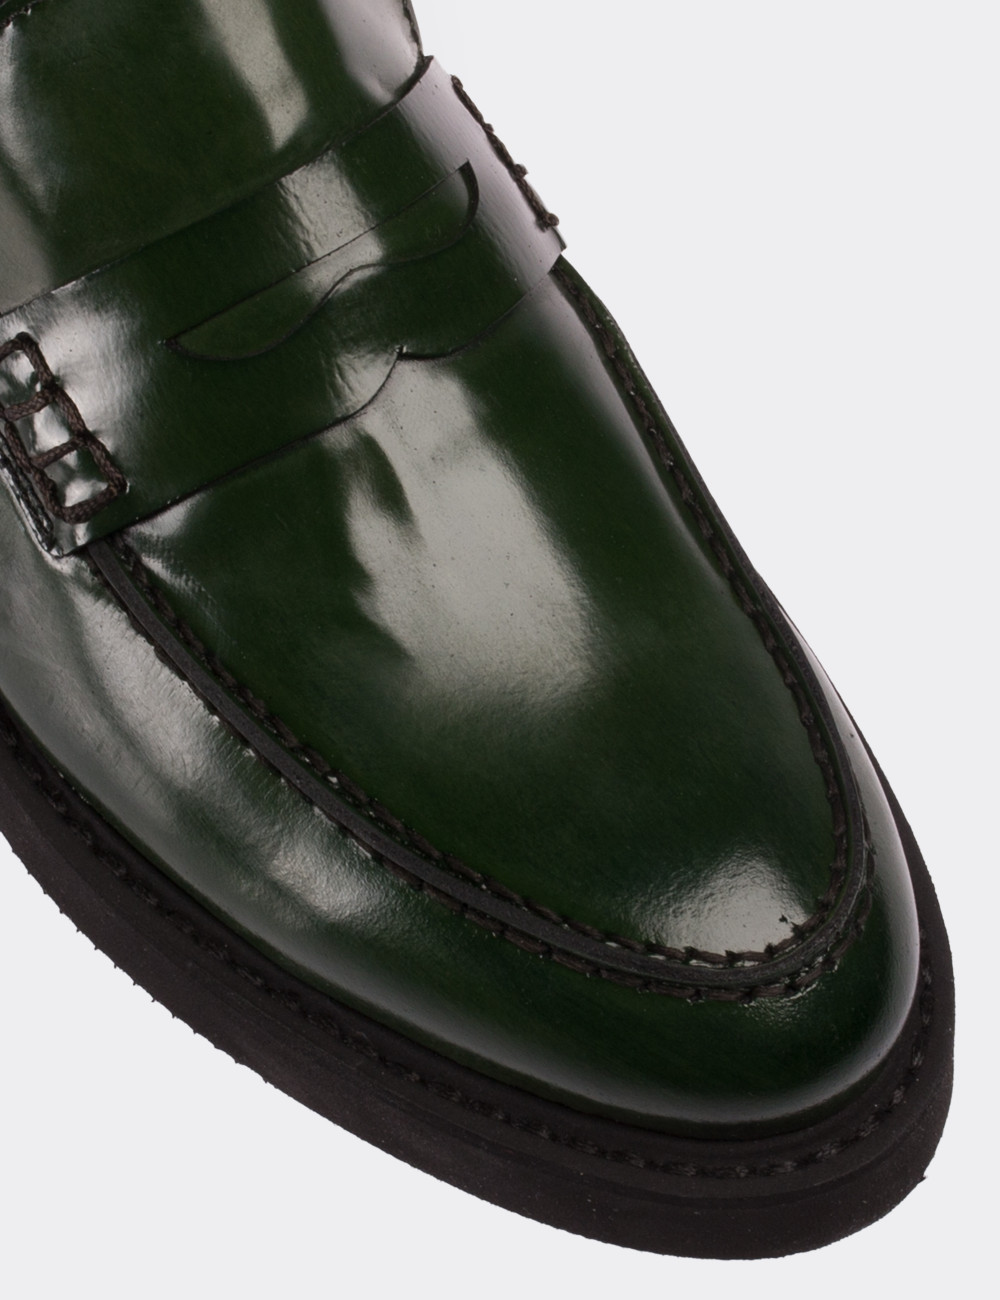 Hakiki Deri Yeşil Loafer Kadın Ayakkabı - 01574ZYSLE02